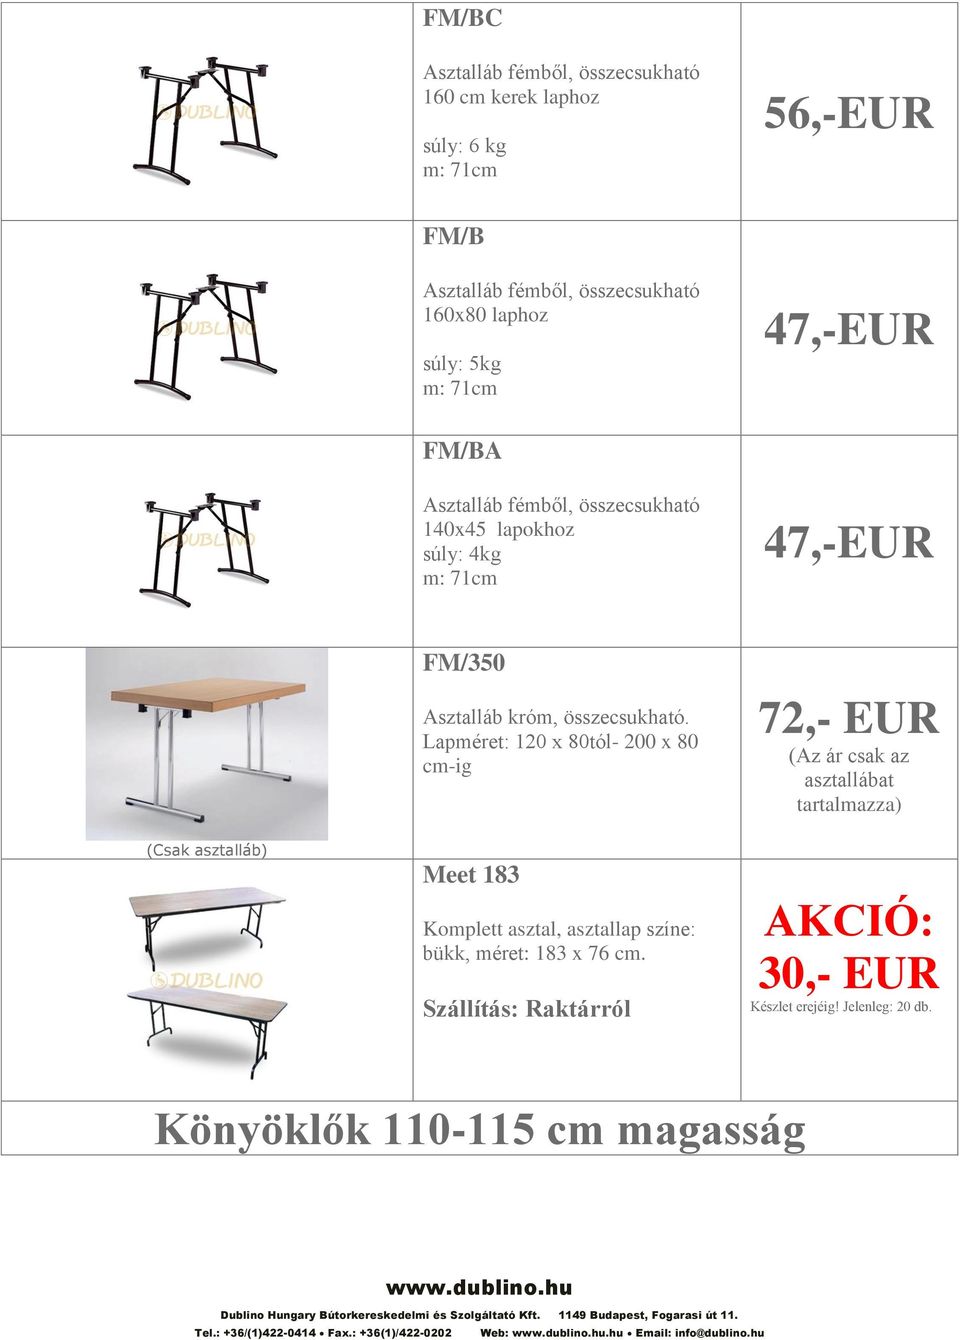 Lapméret: 120 x 80tól- 200 x 80 cm-ig 72,- EUR (Az ár csak az asztallábat tartalmazza) (Csak asztalláb) Meet 183 Komplett asztal, asztallap színe: bükk,